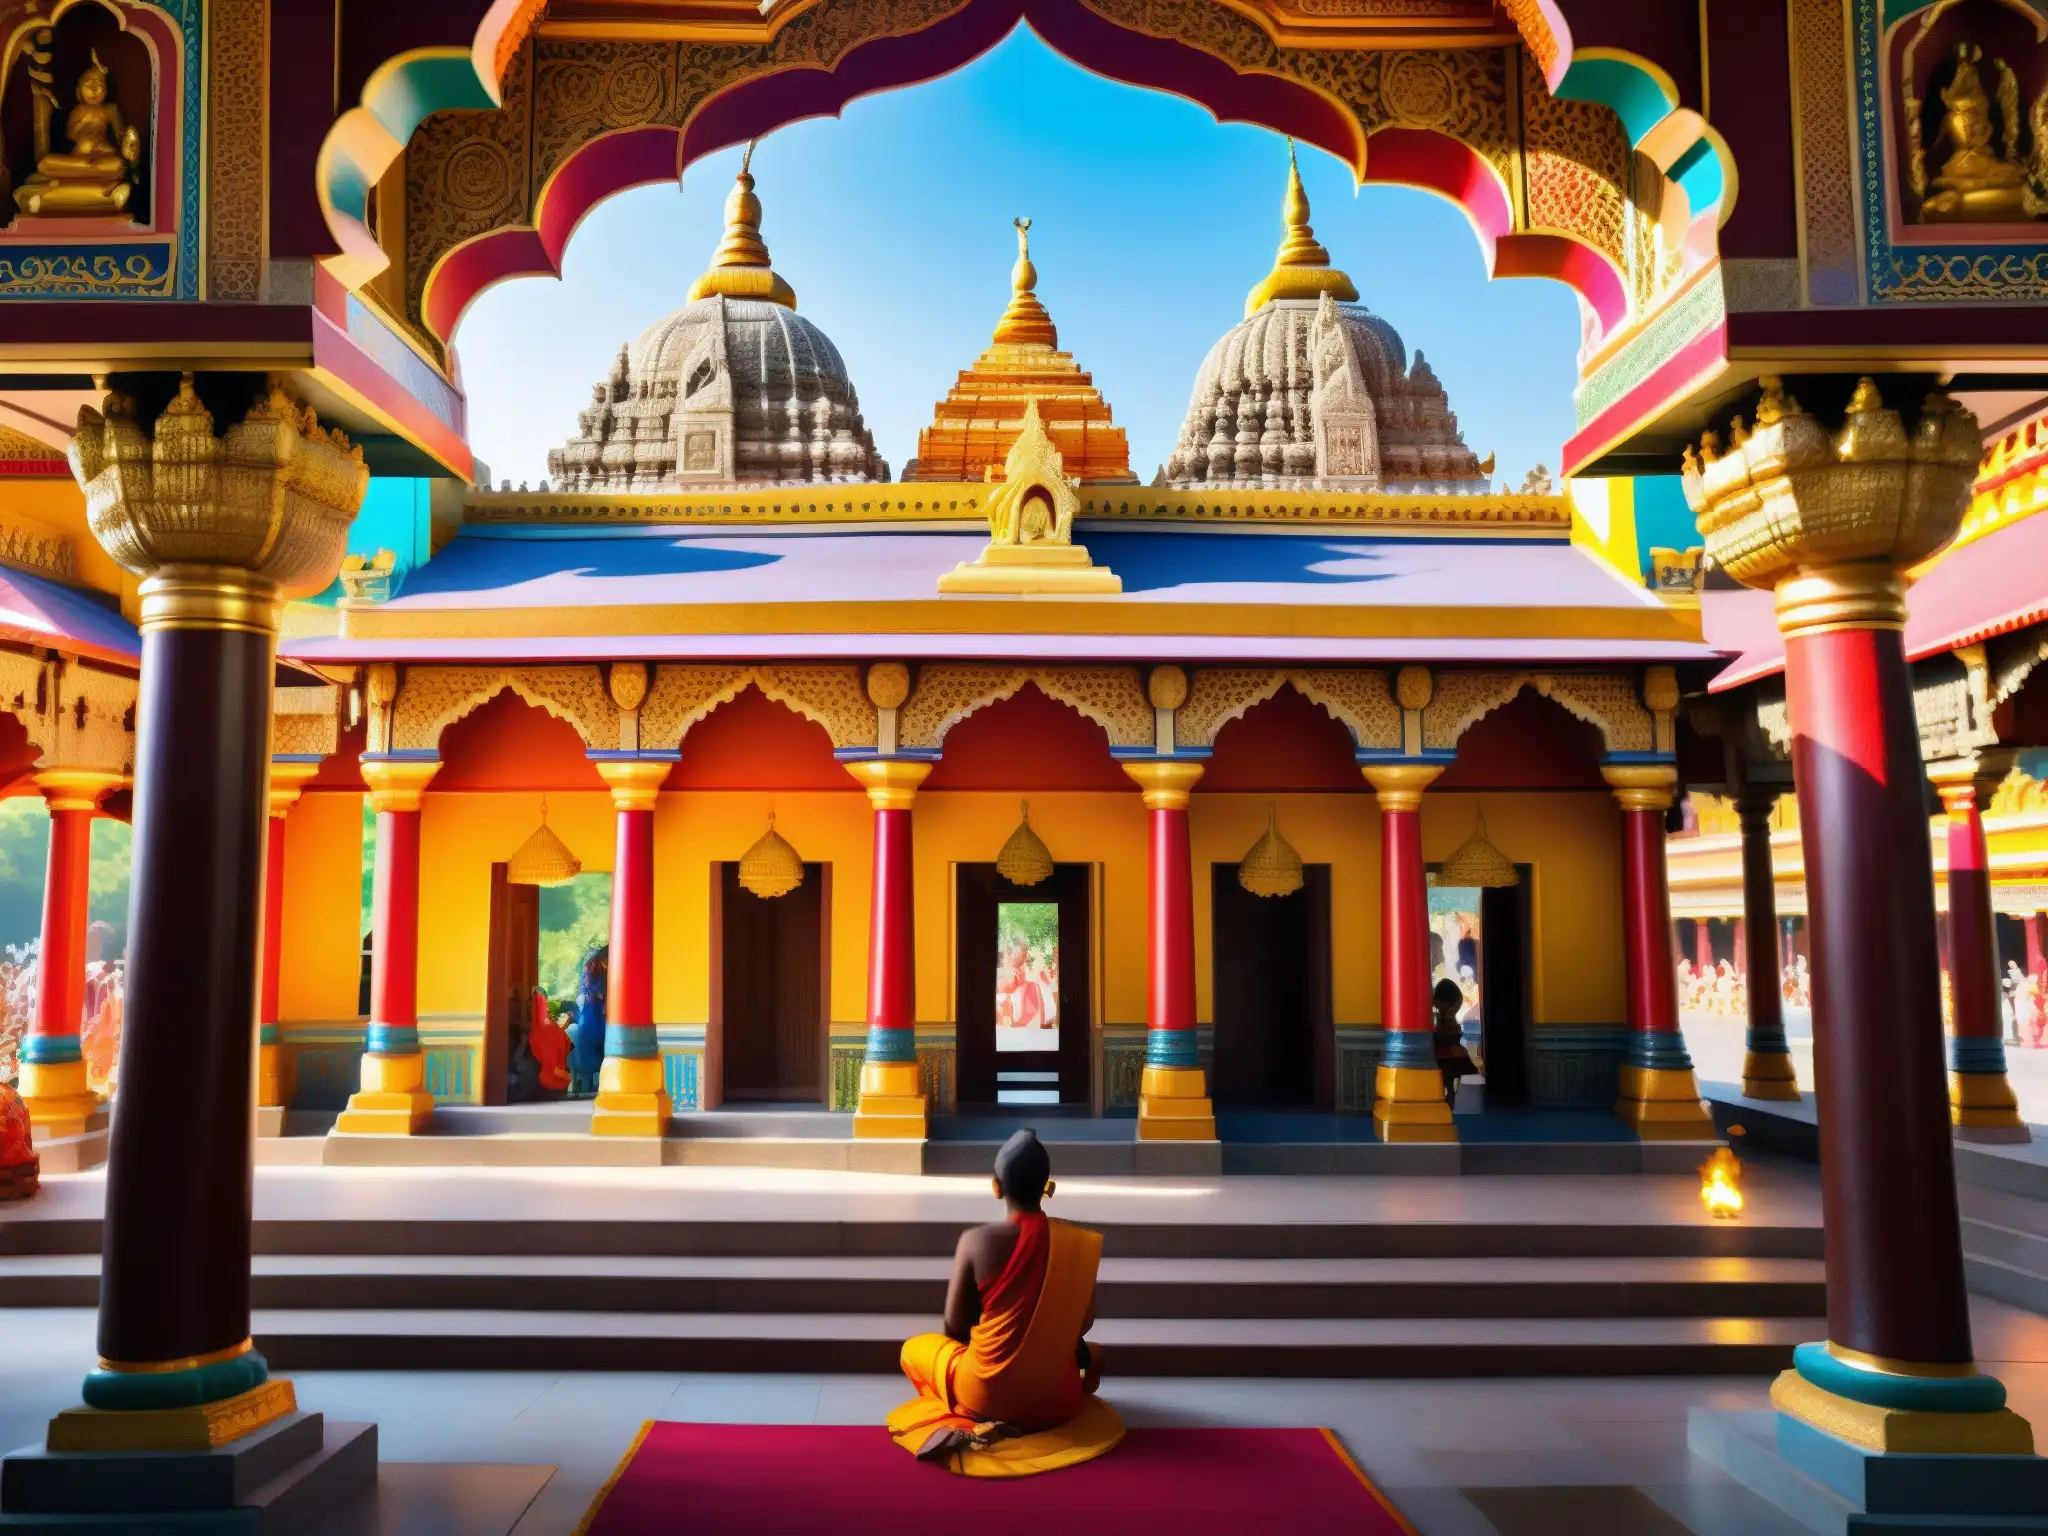 Vibrante templo hindú con apariciones de deidades, rituales y devotos en oración, bañado en luz y sombra